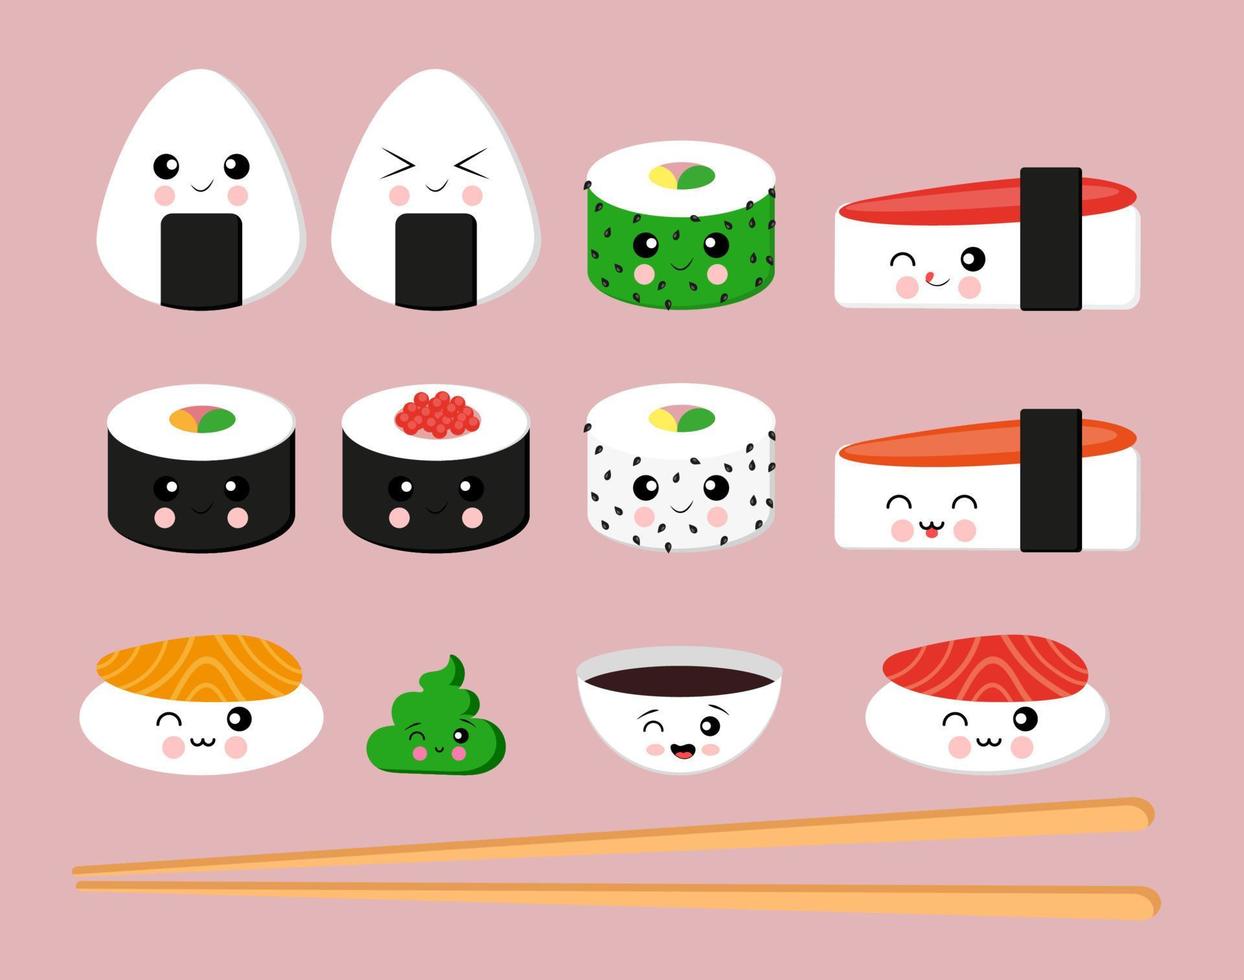 conjunto de sushi japonés sashimi temaki y rollos nigiri lindo con salsa de soja kawaii, íconos emoji de moda con diferentes emociones ilustración vectorial vector